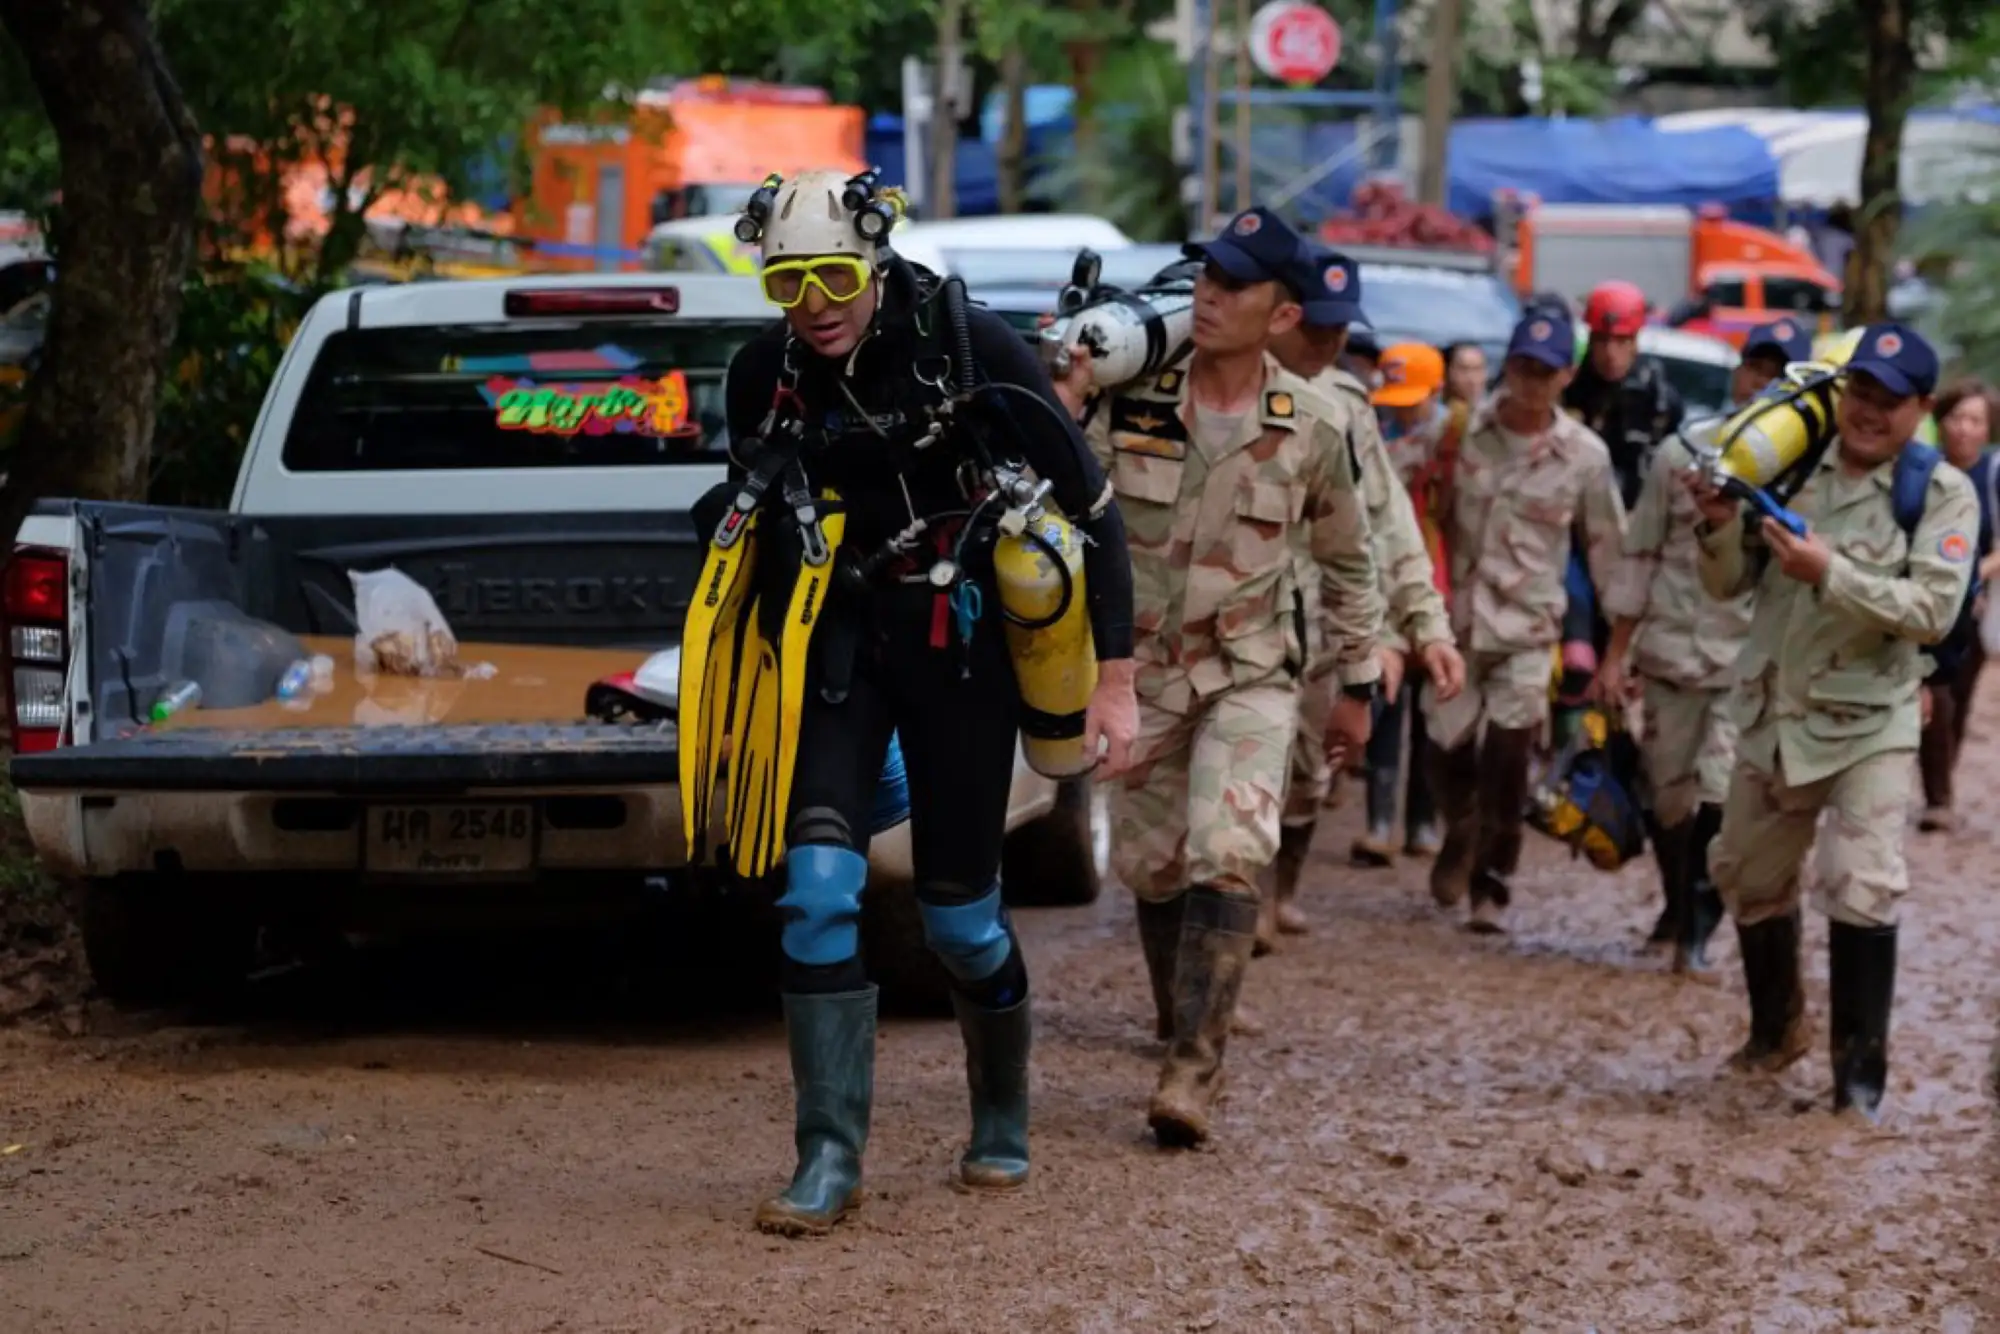 《泰国洞穴救援》主要以参与洞穴救援的潜水员的视角出发（图片来源：美国国家地理官网）